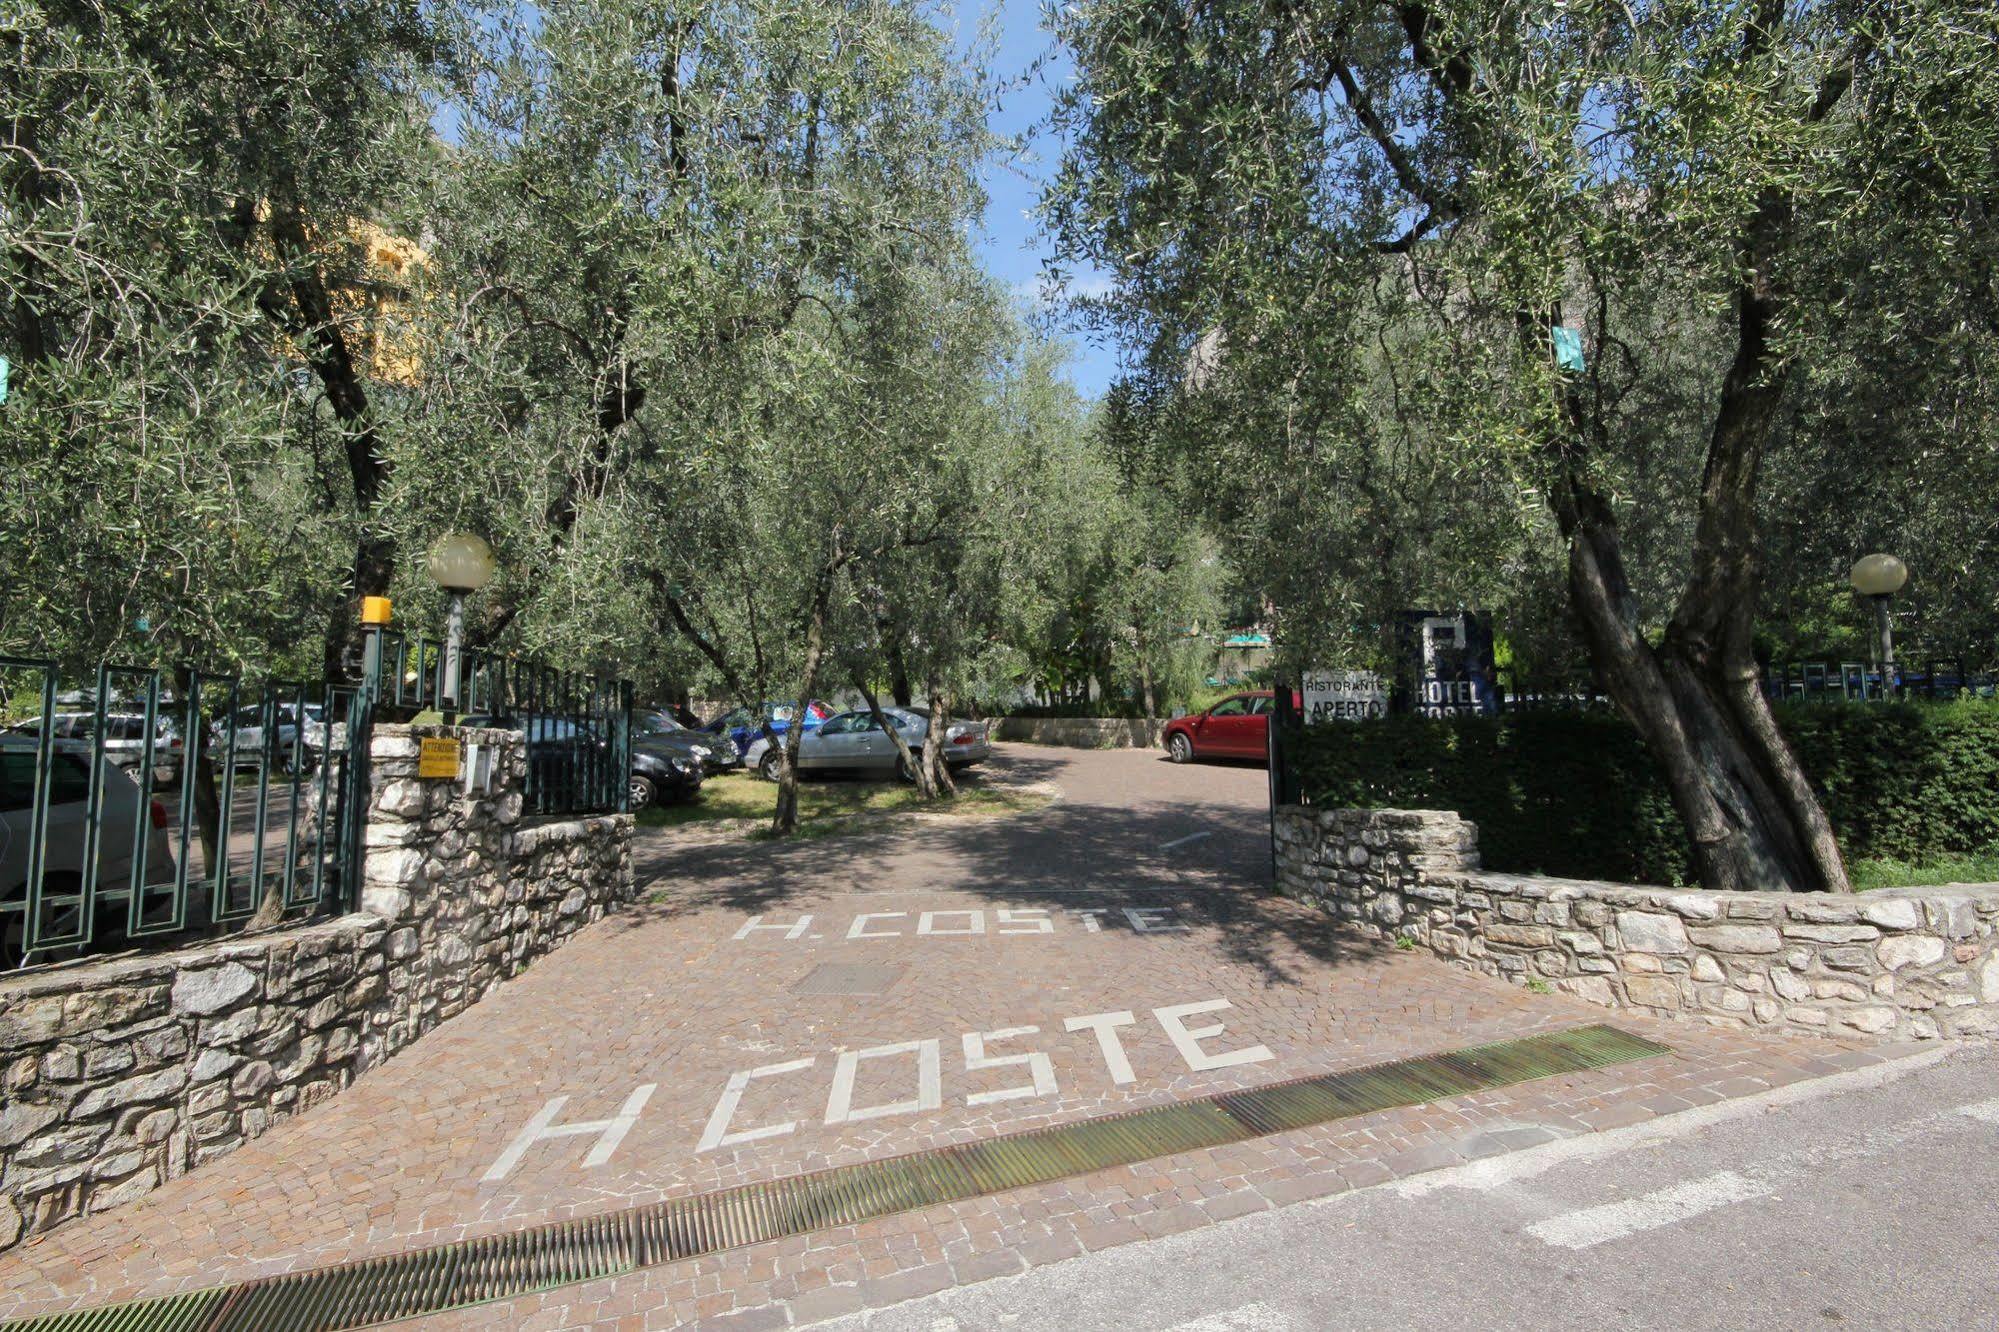 Hotel Coste Limone sul Garda Luaran gambar